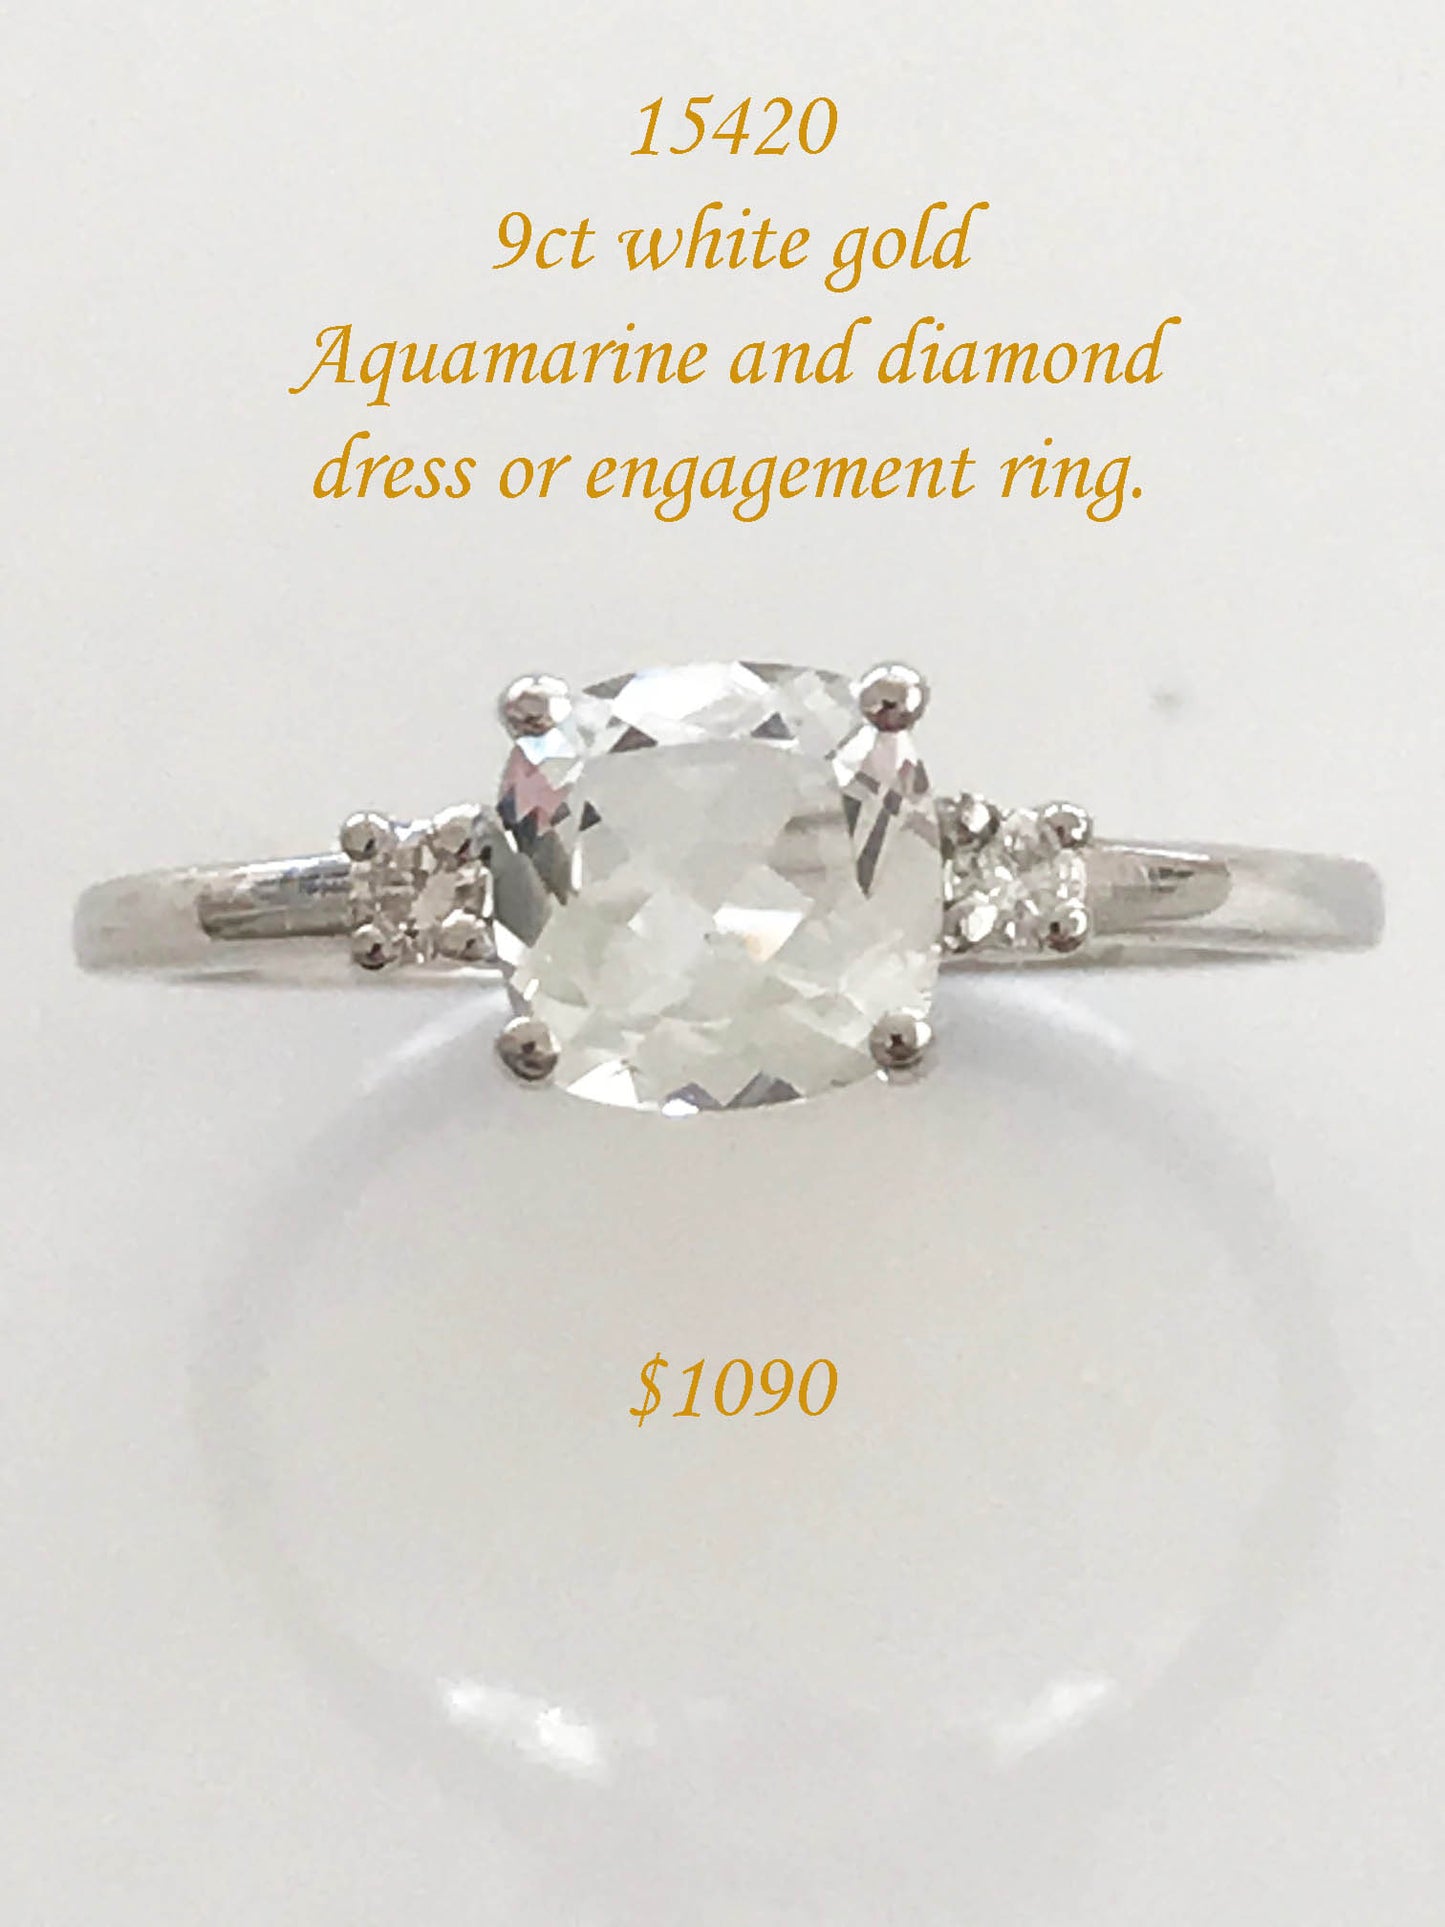 Aquamarine and diamond ring in 9ct white gold.